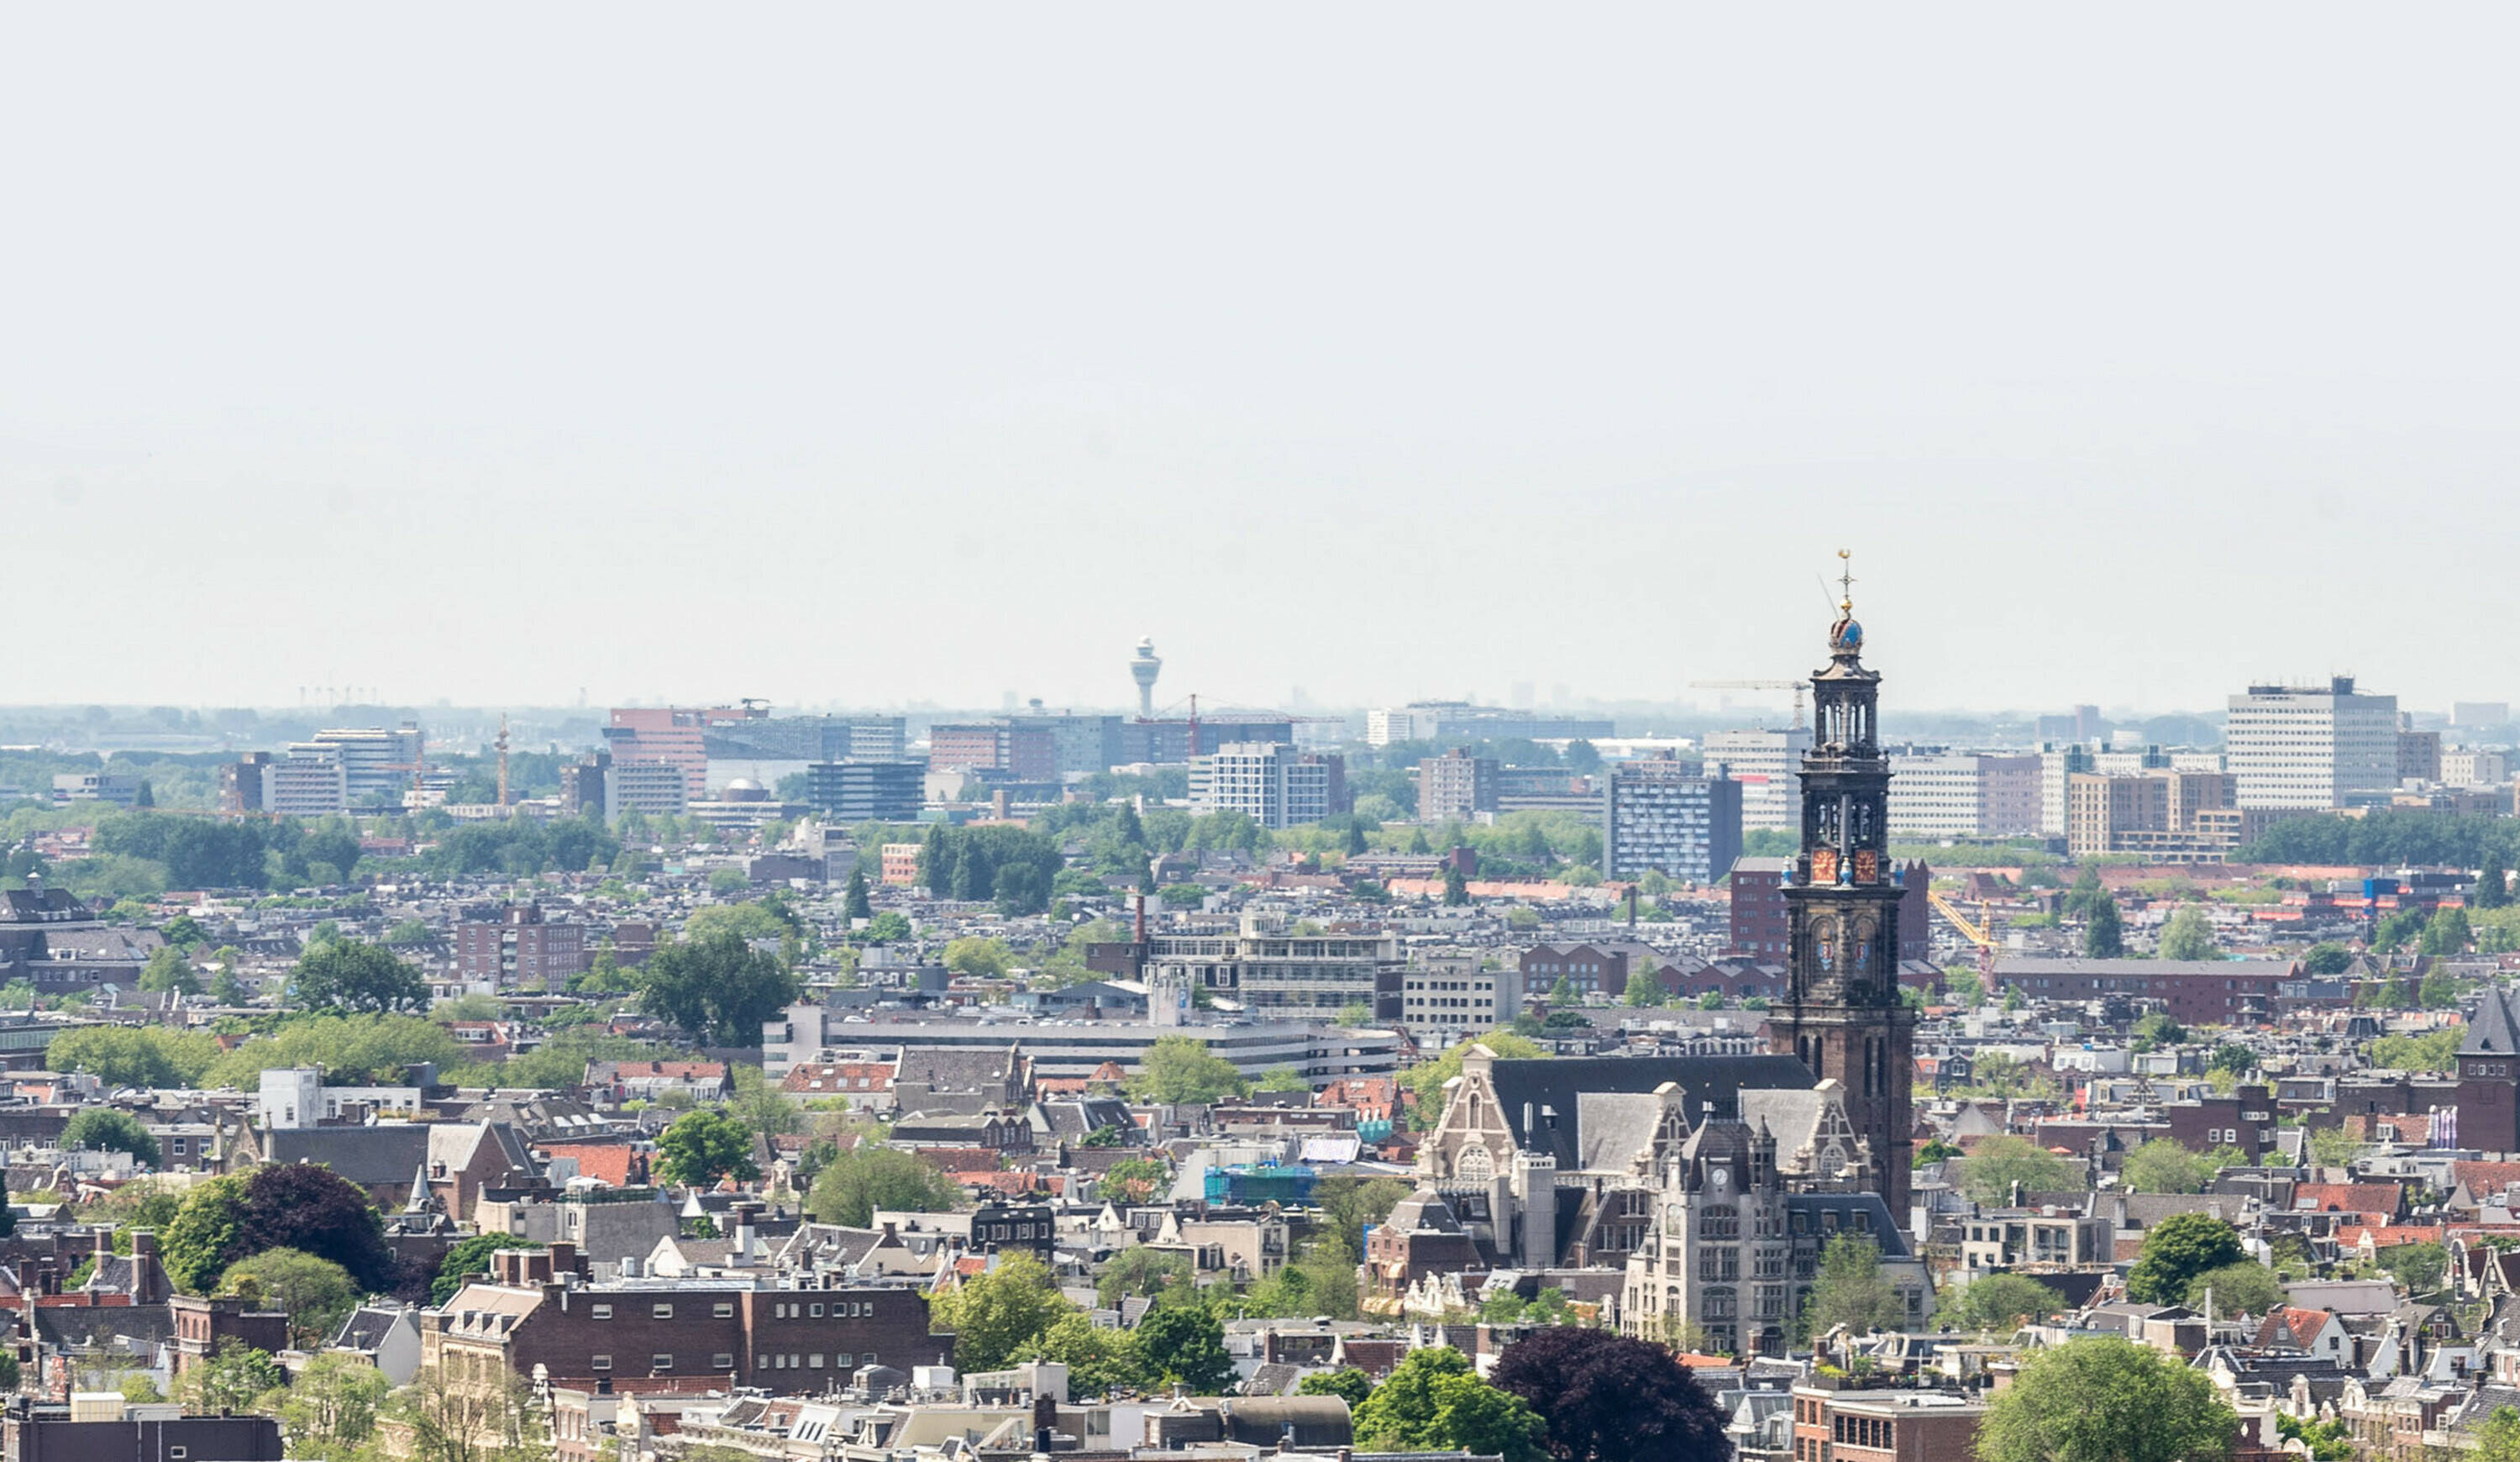 sfeerfoto uitzicht op Amsterdam Westertoren